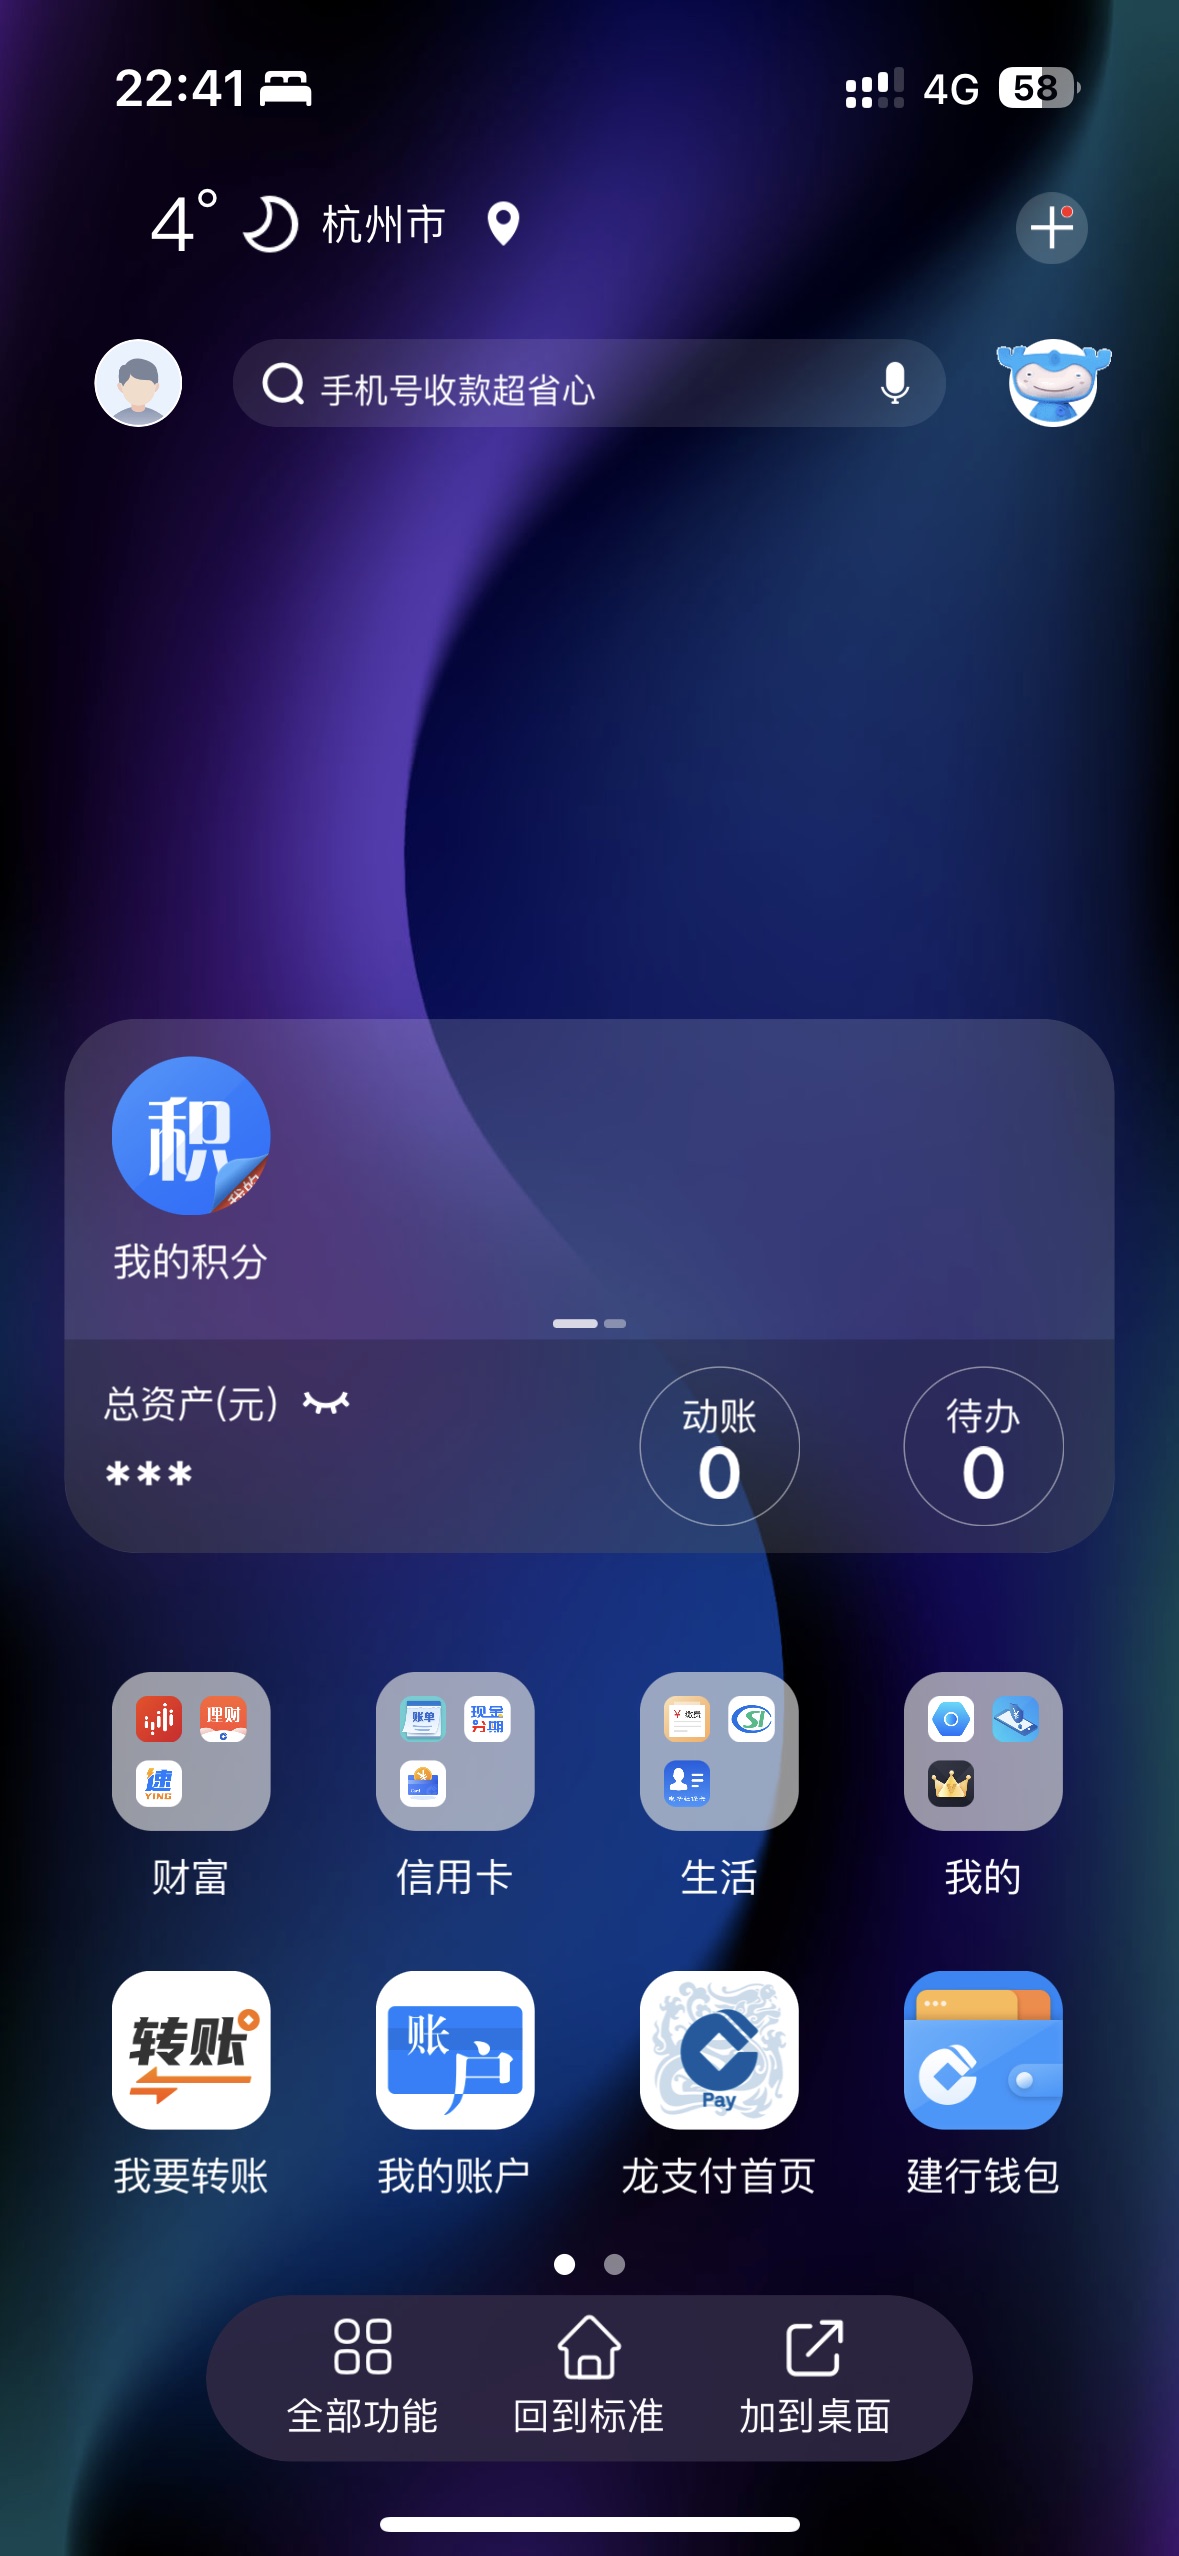 App 6.0